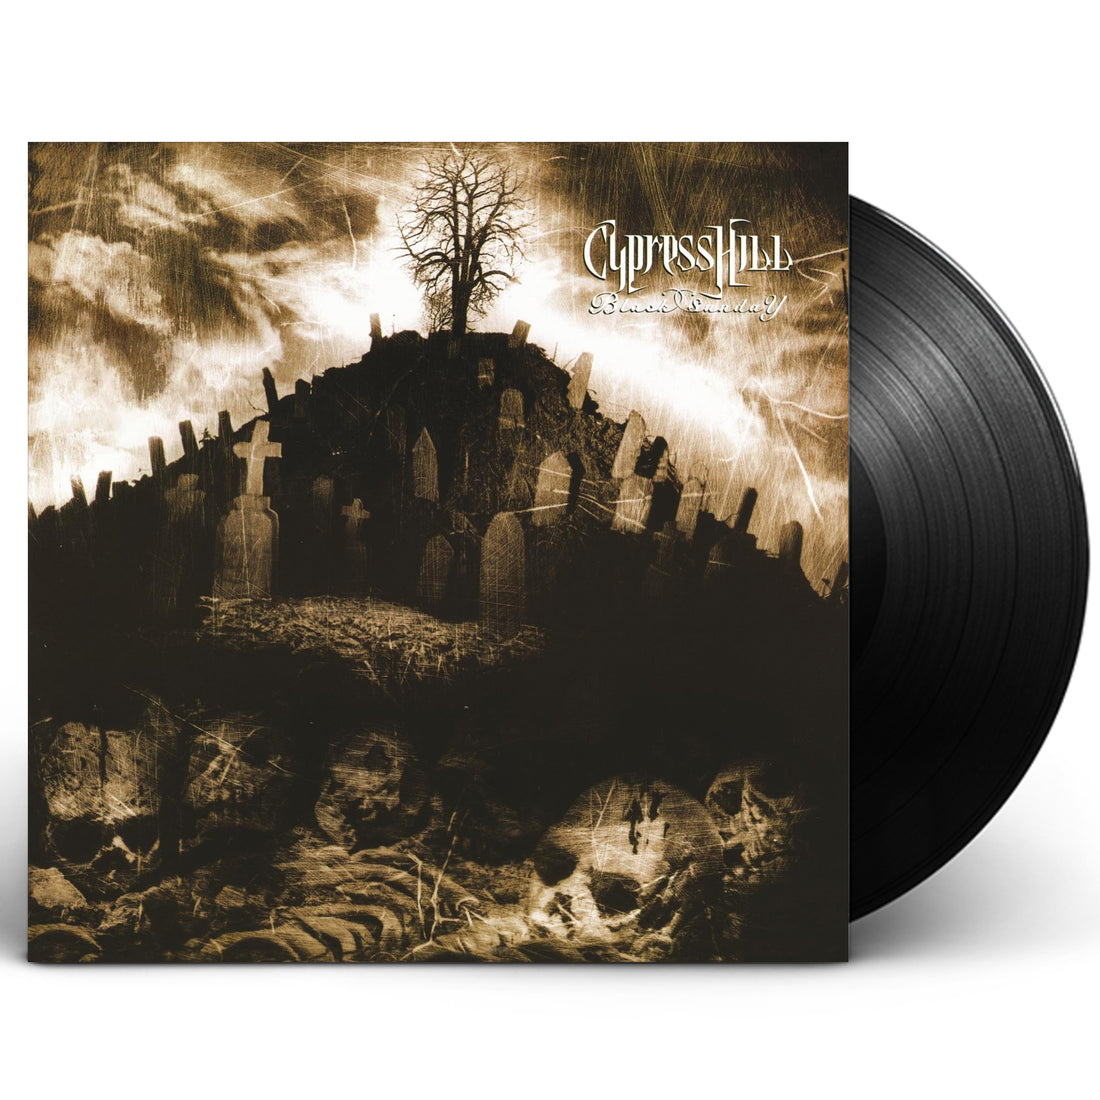 Cypress Hill "Black Sunday" 2xLP Vinyl